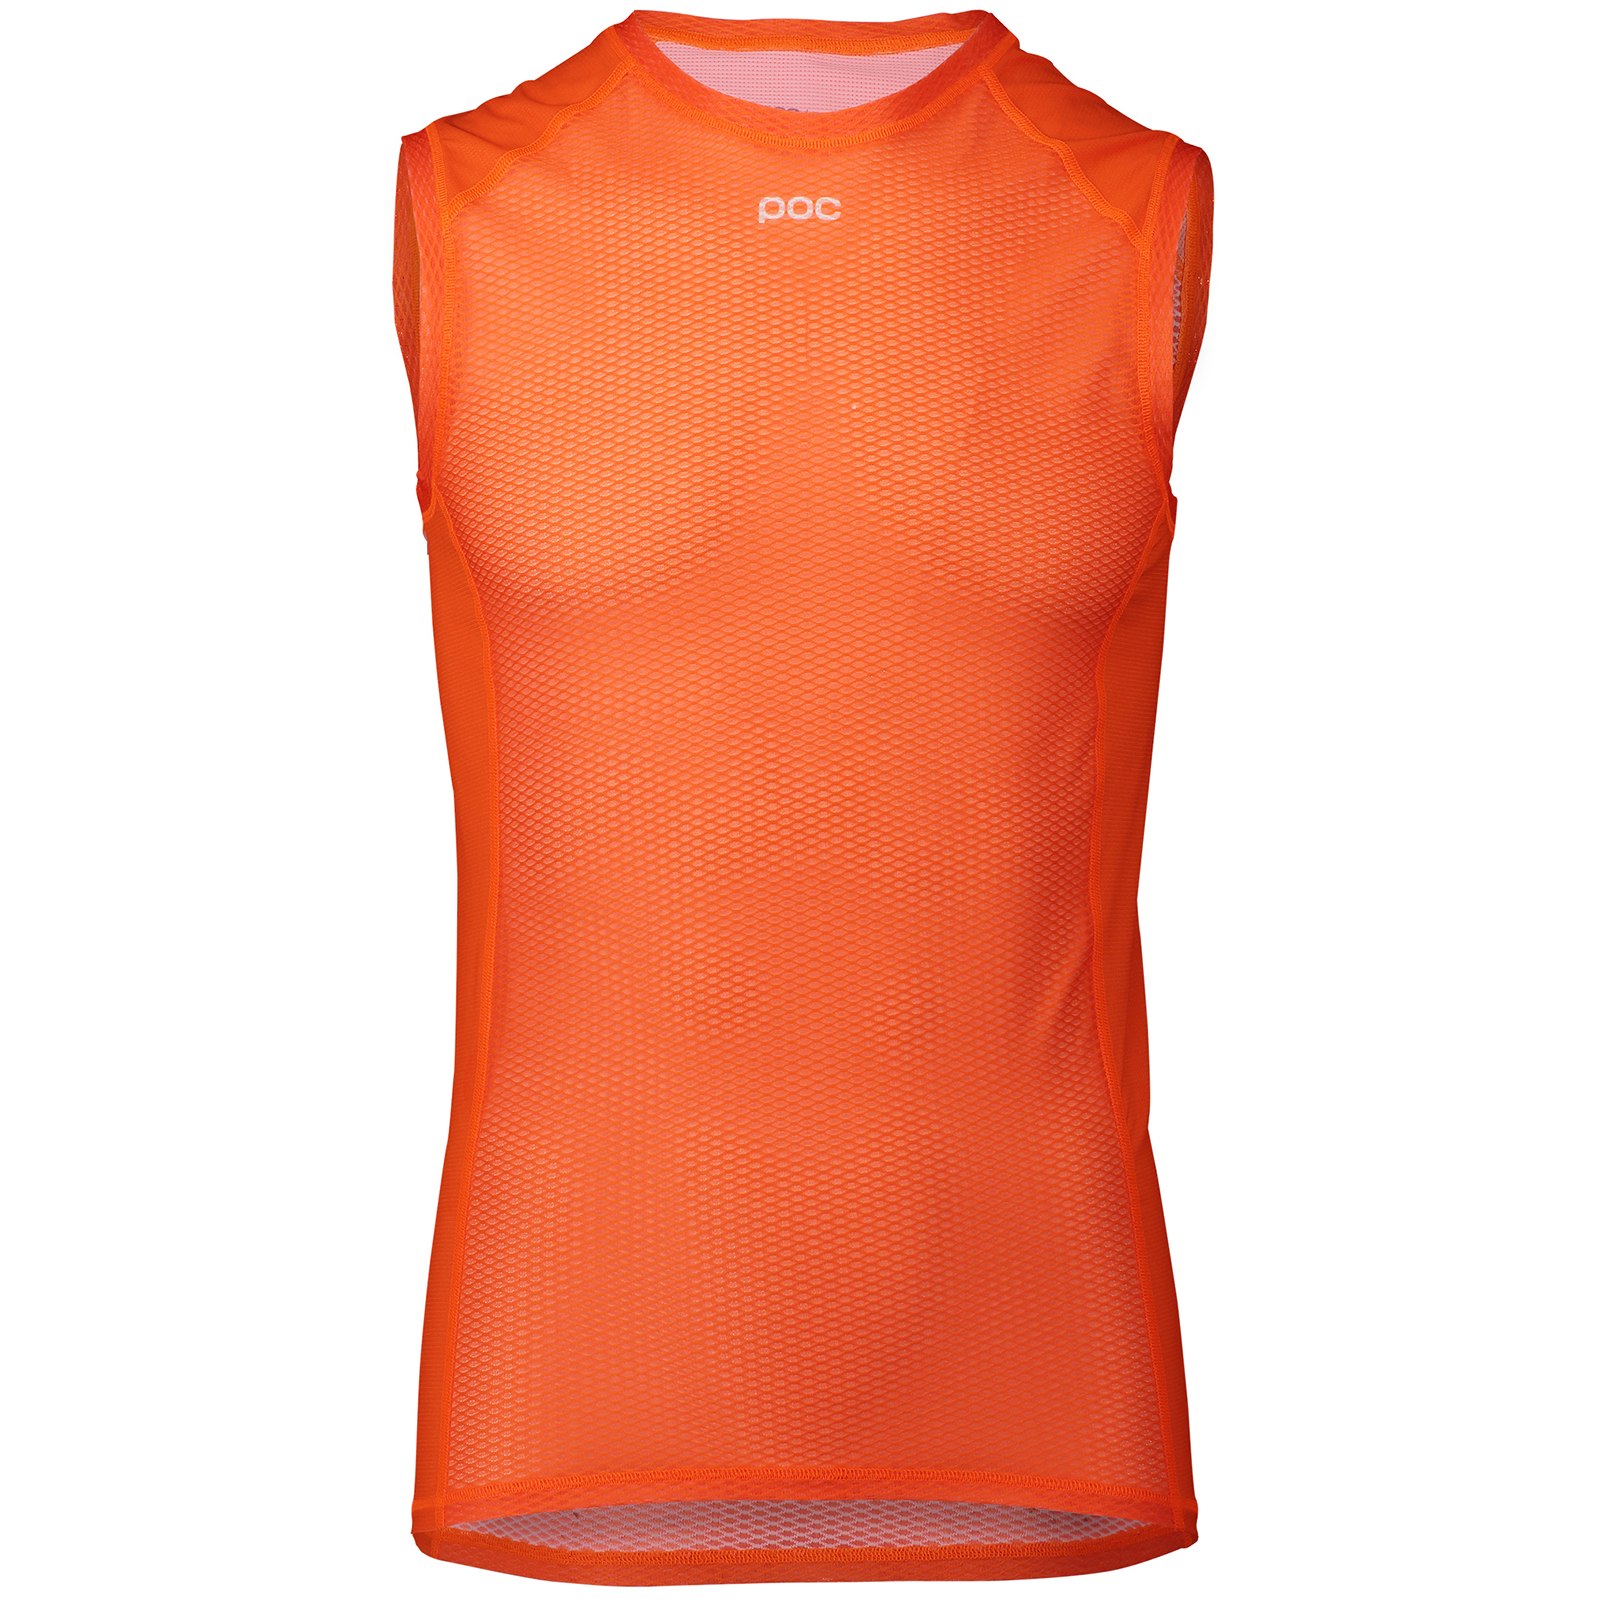 Produktbild von POC Essential Layer Unterhemd - 1205 Zink Orange